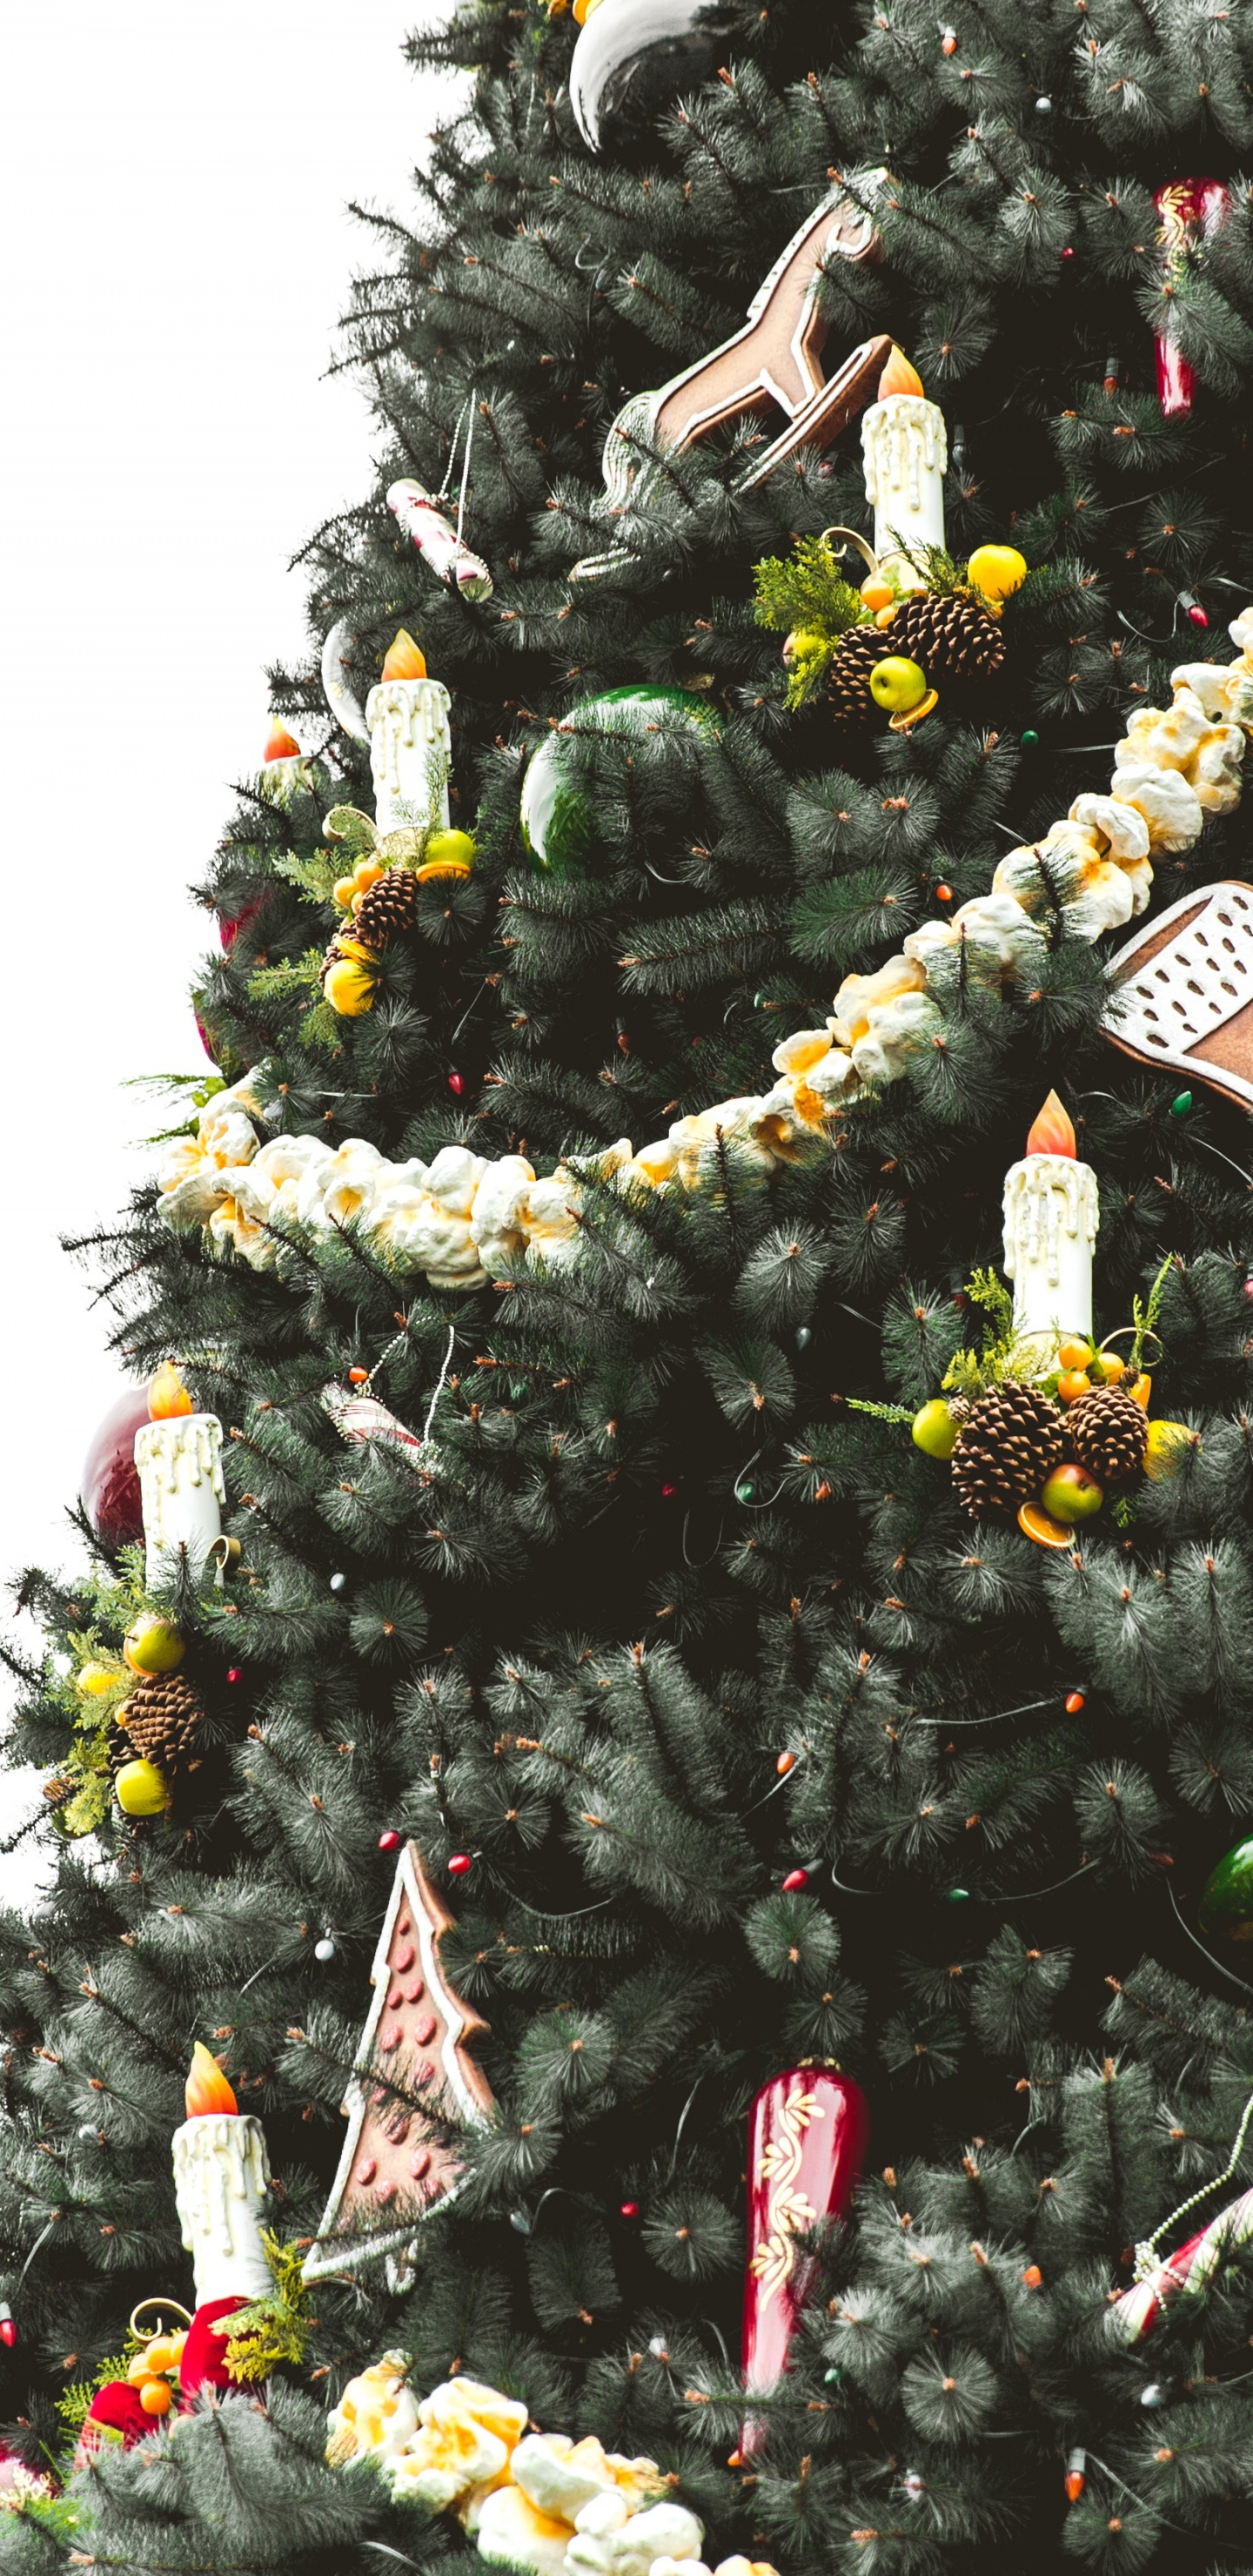 Weihnachtsbaum, Weihnachten, Weihnachts-und Ferienzeit, Baum, Woody Pflanze. Wallpaper in 1440x2960 Resolution